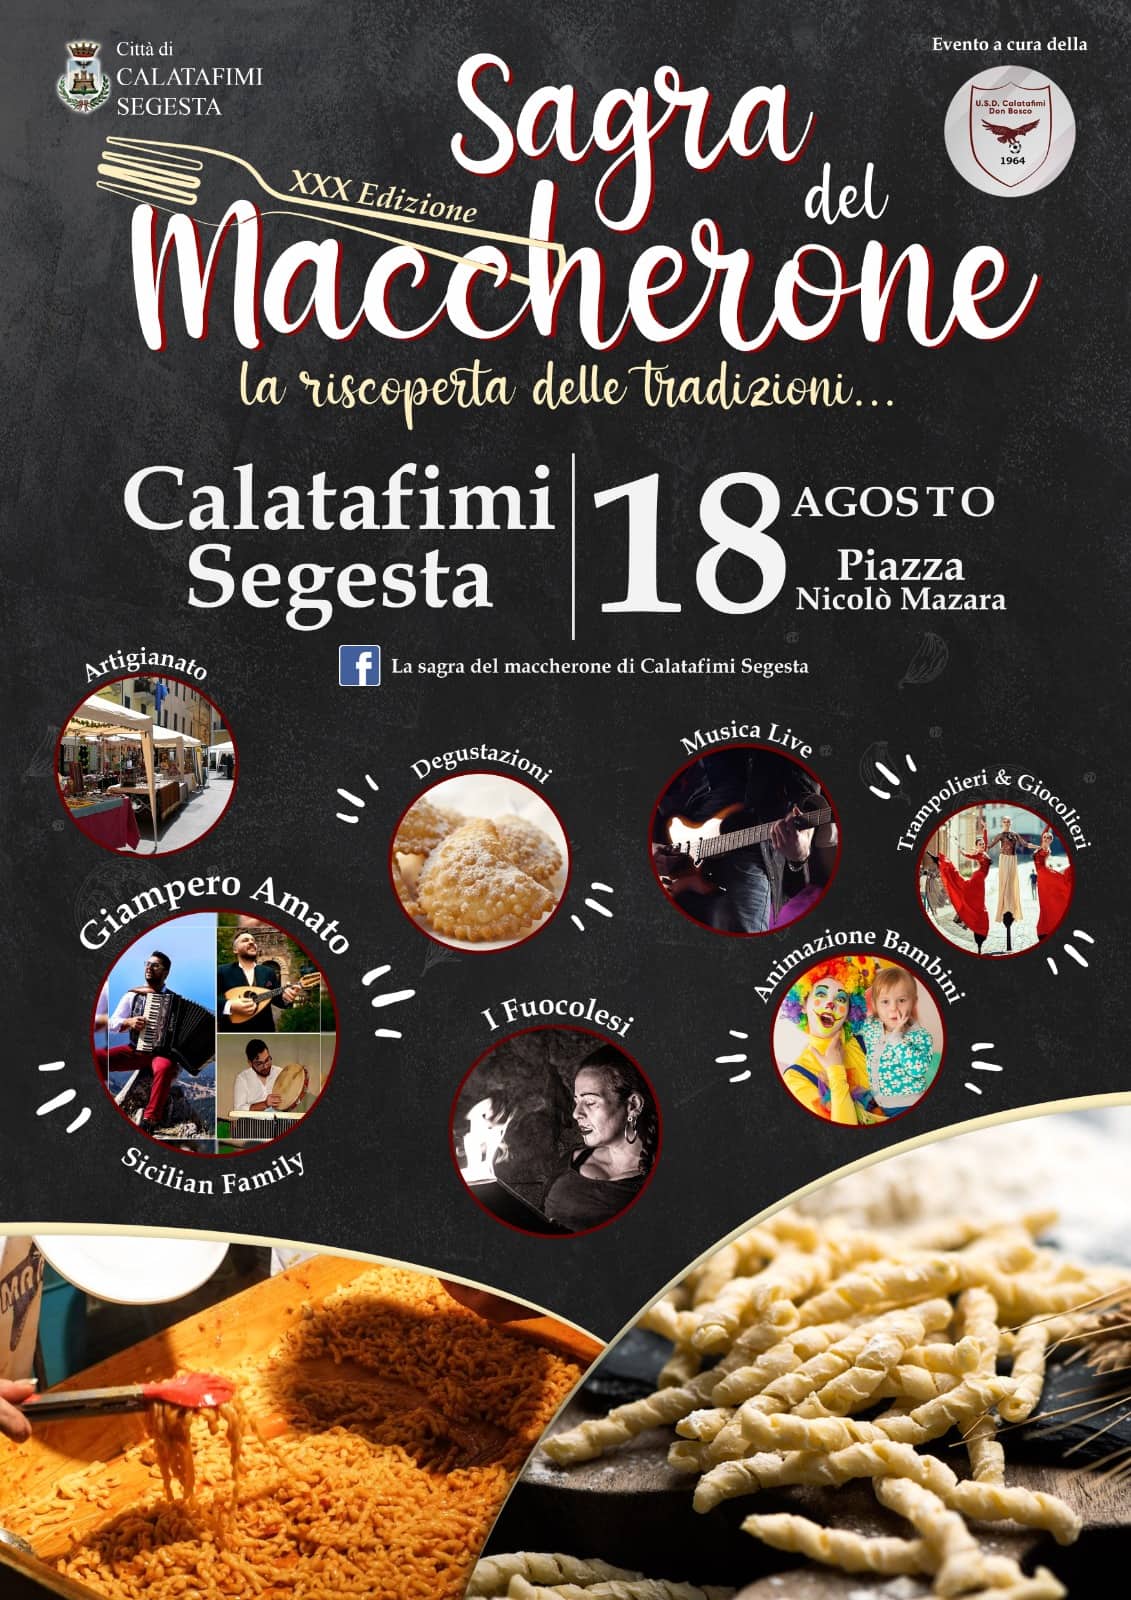 Calatafimi-Segesta (TP)
"30^ Sagra del Maccherone"
18 Agosto 2022